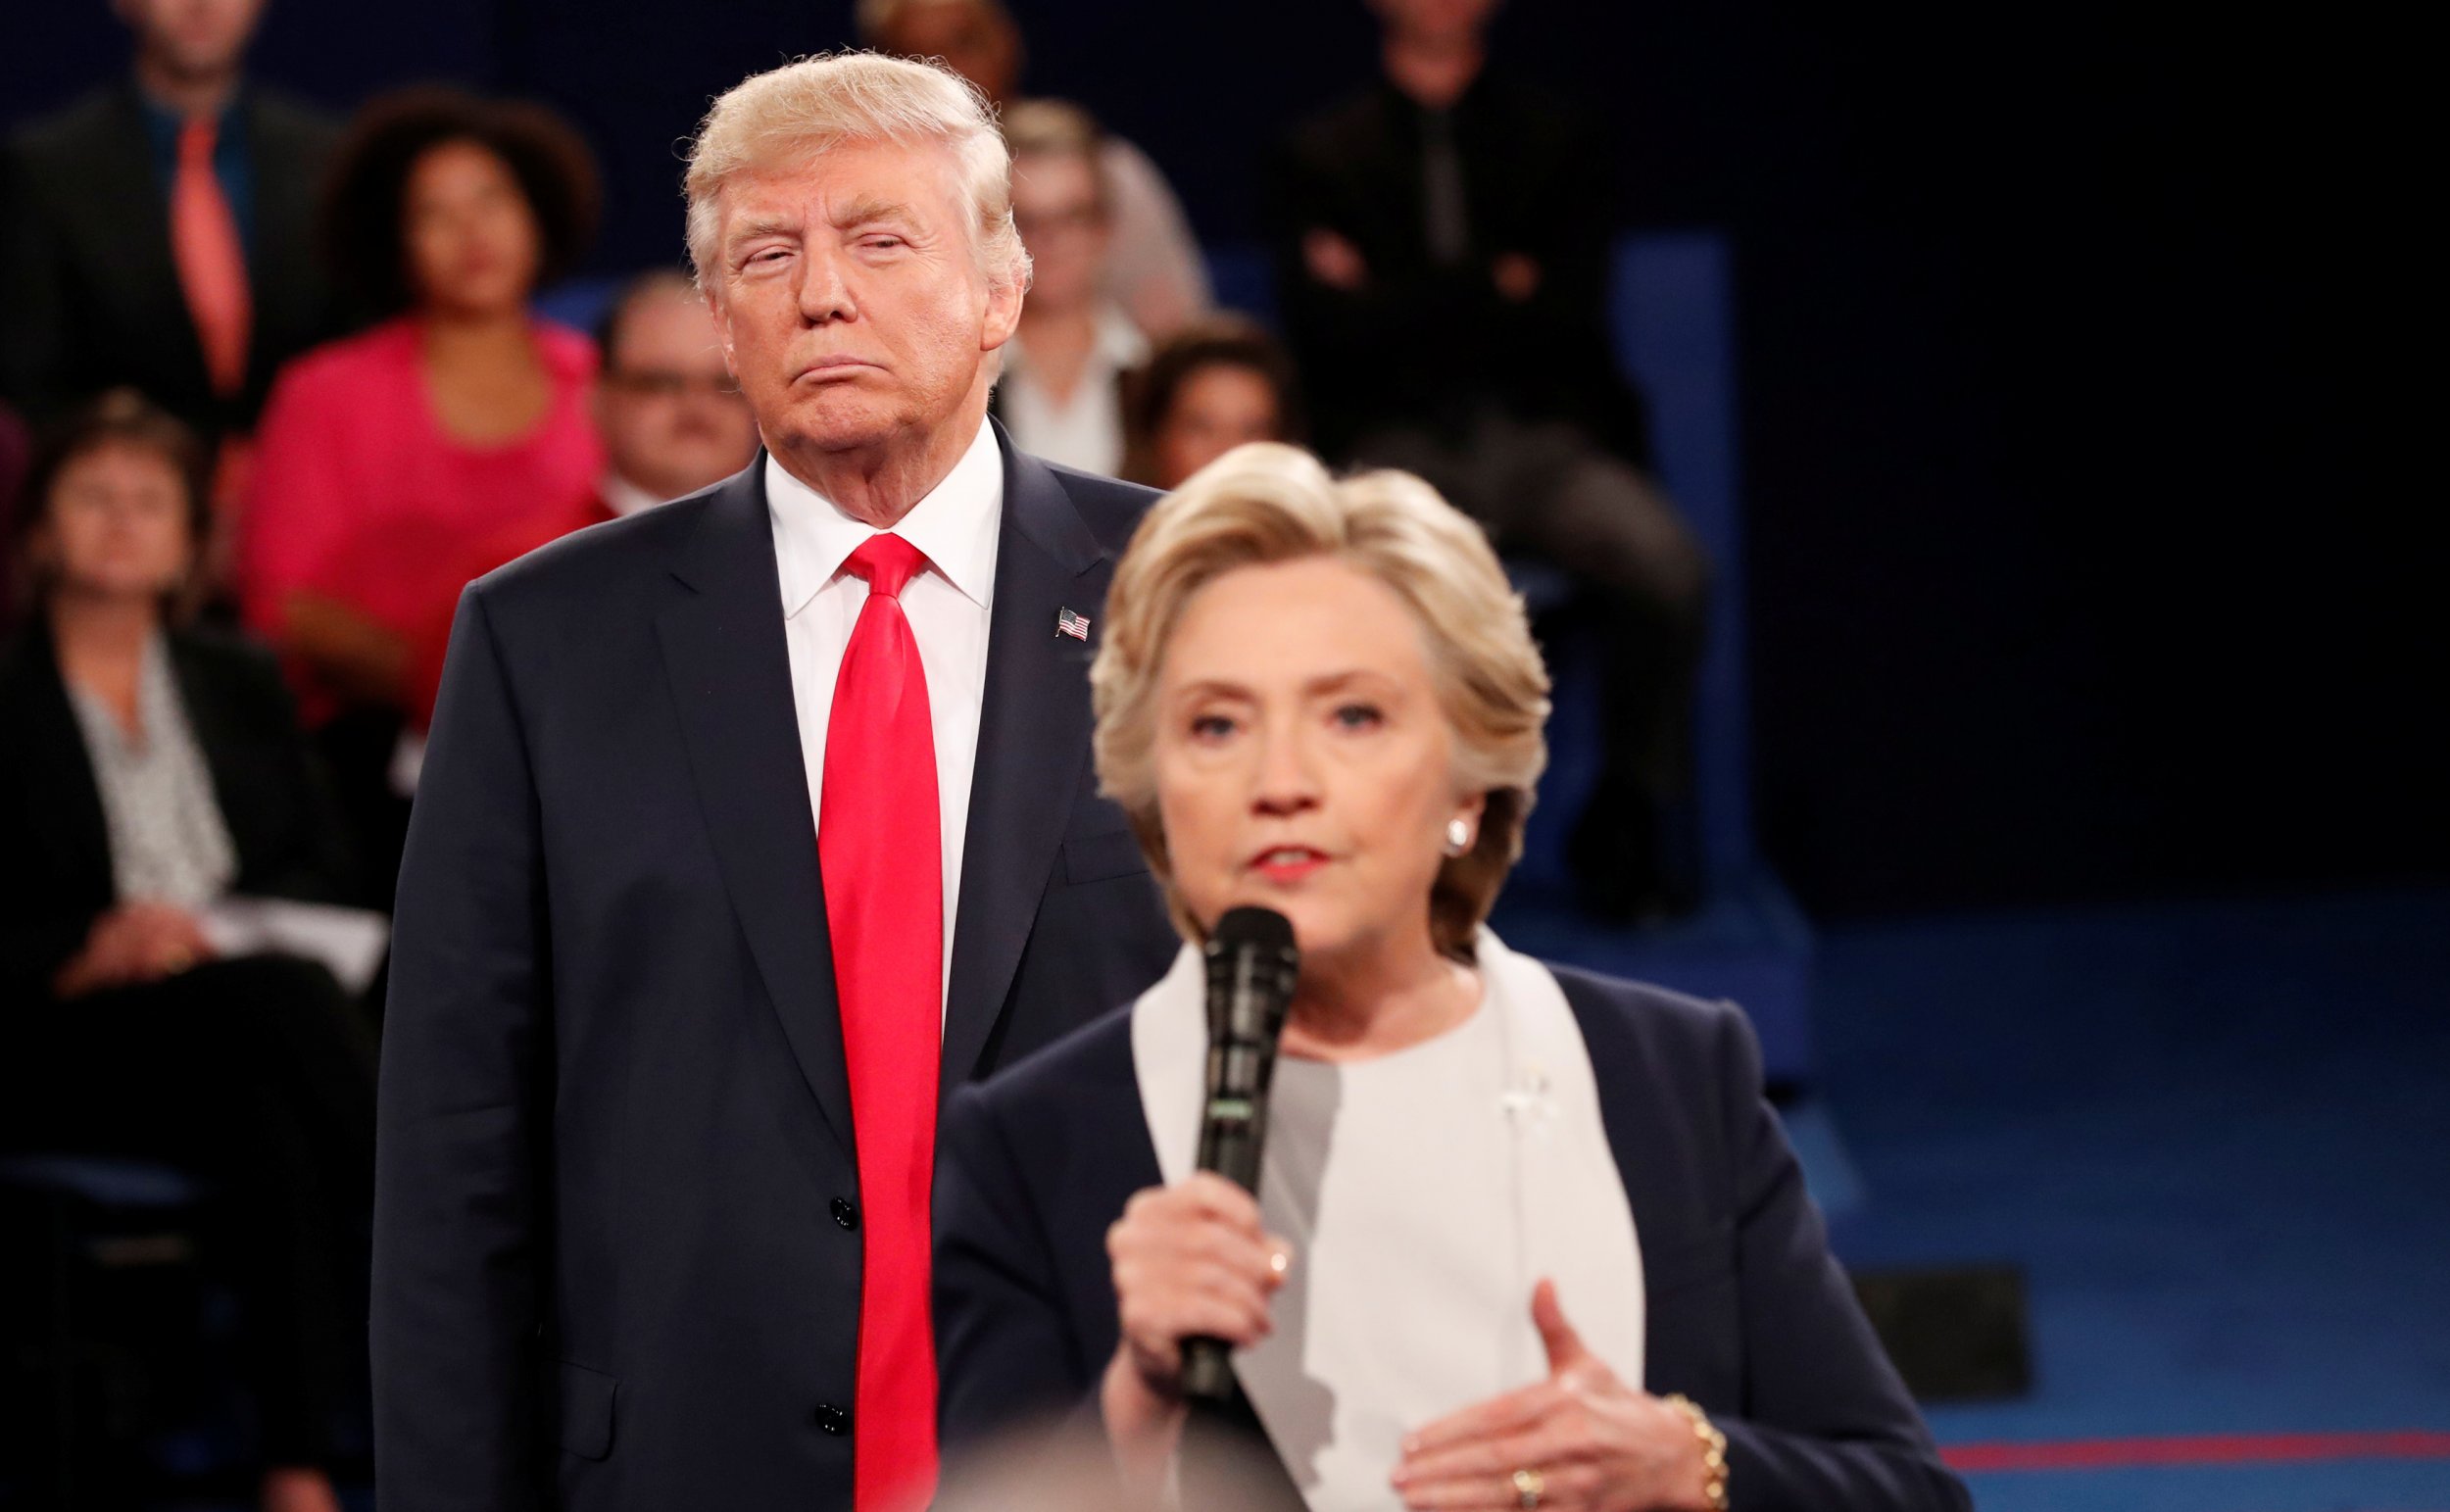 Trump and Clinton debate